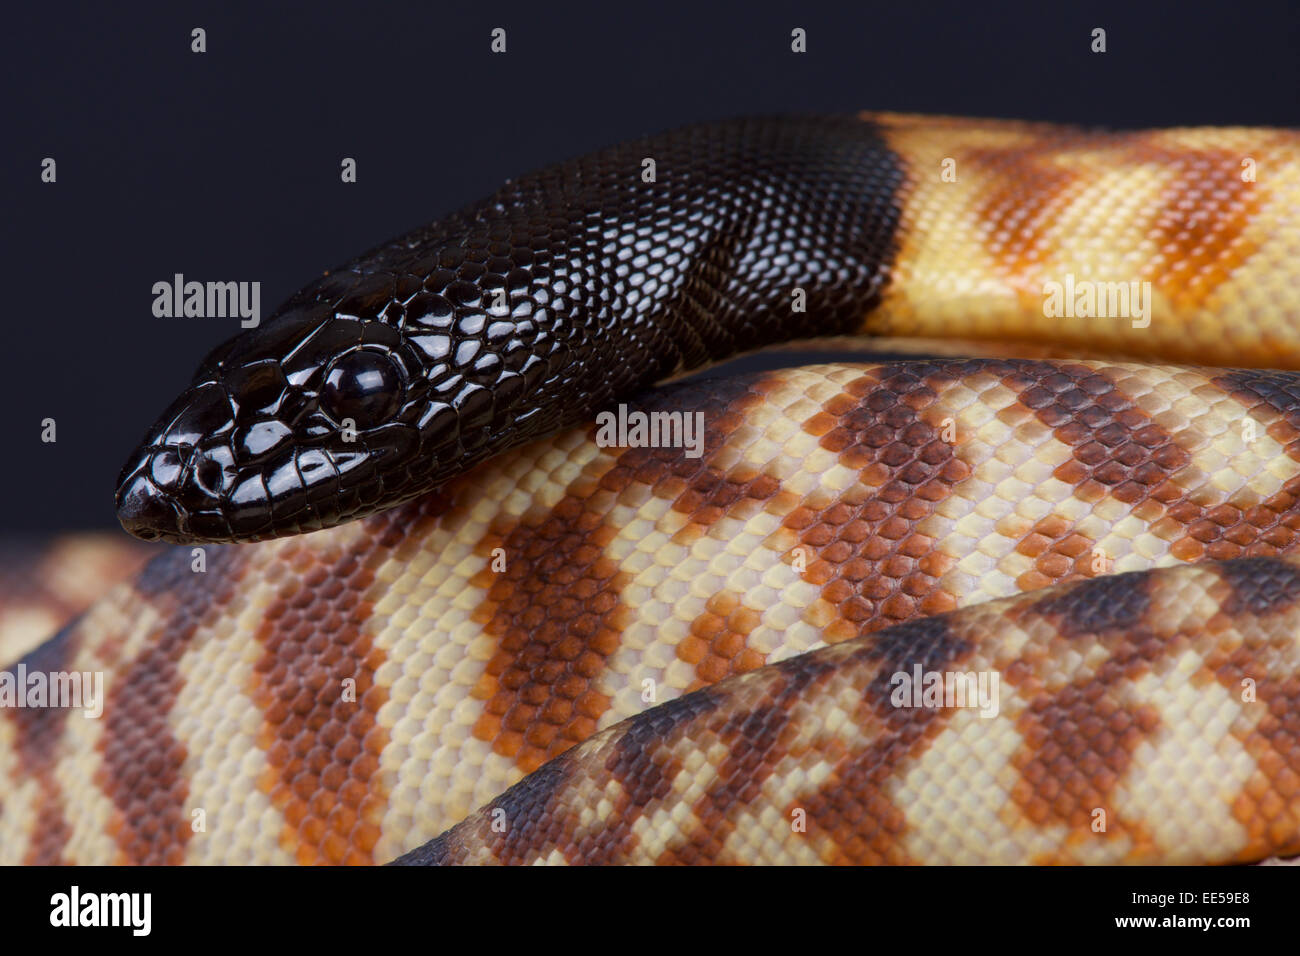 A testa nera / python Aspidites melanocephalus) Foto Stock